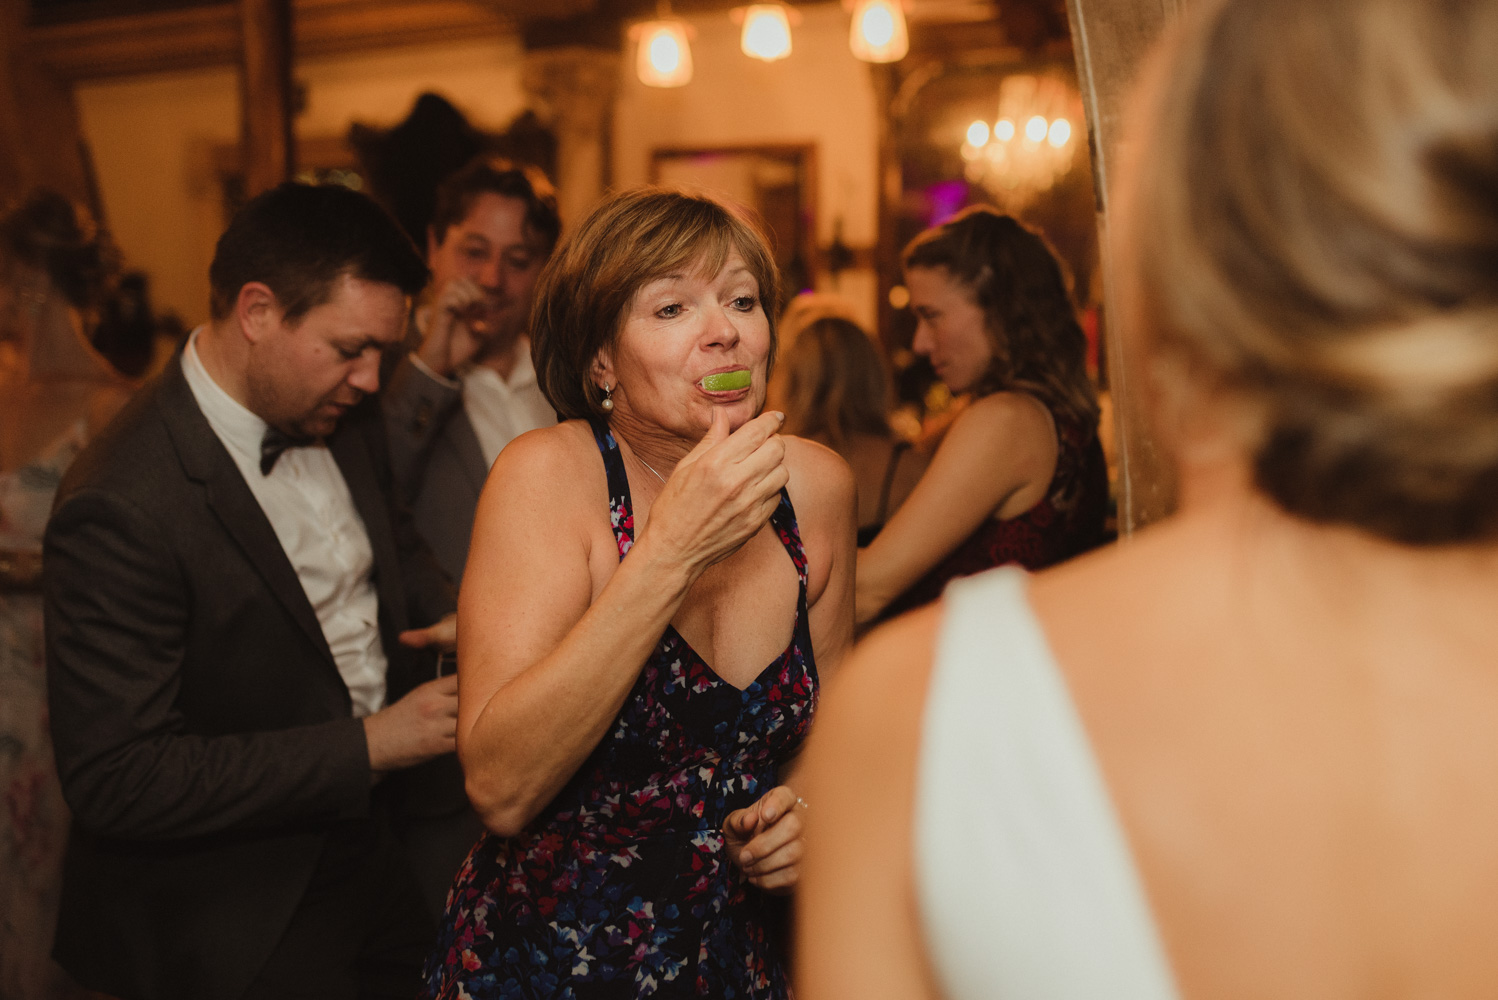 Triple S Ranch Wedding Venue, brides mom dancing photo